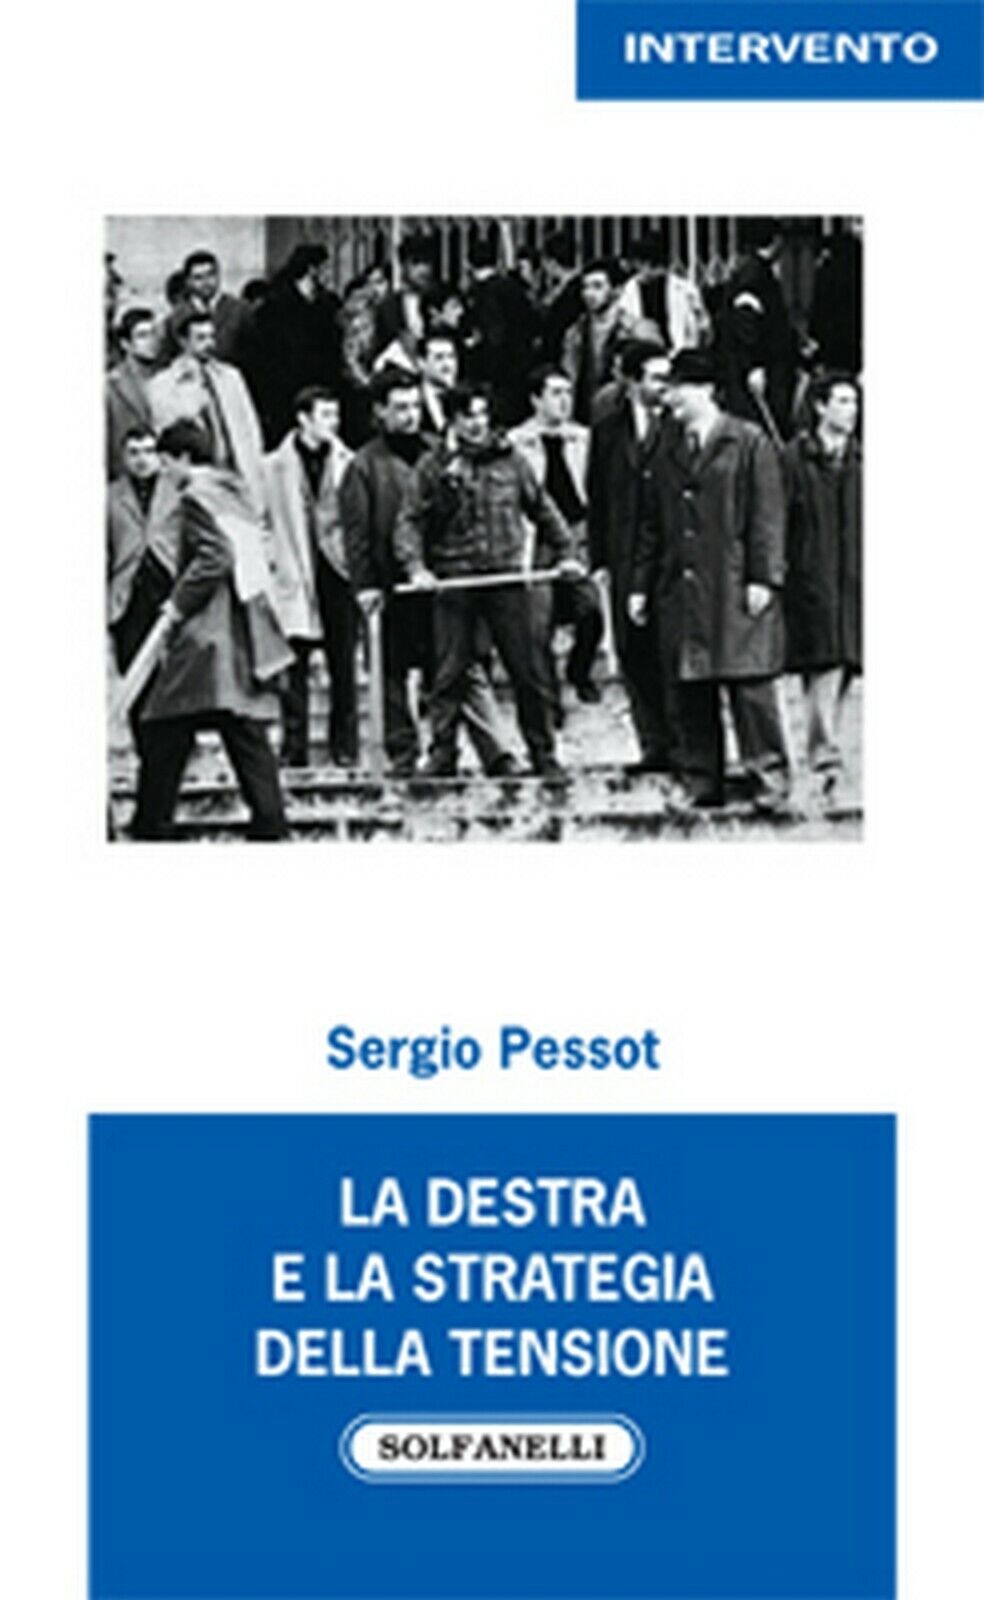 LA DESTRA e la strategia della tensione  di Sergio Pessot,  Solfanelli Edizioni